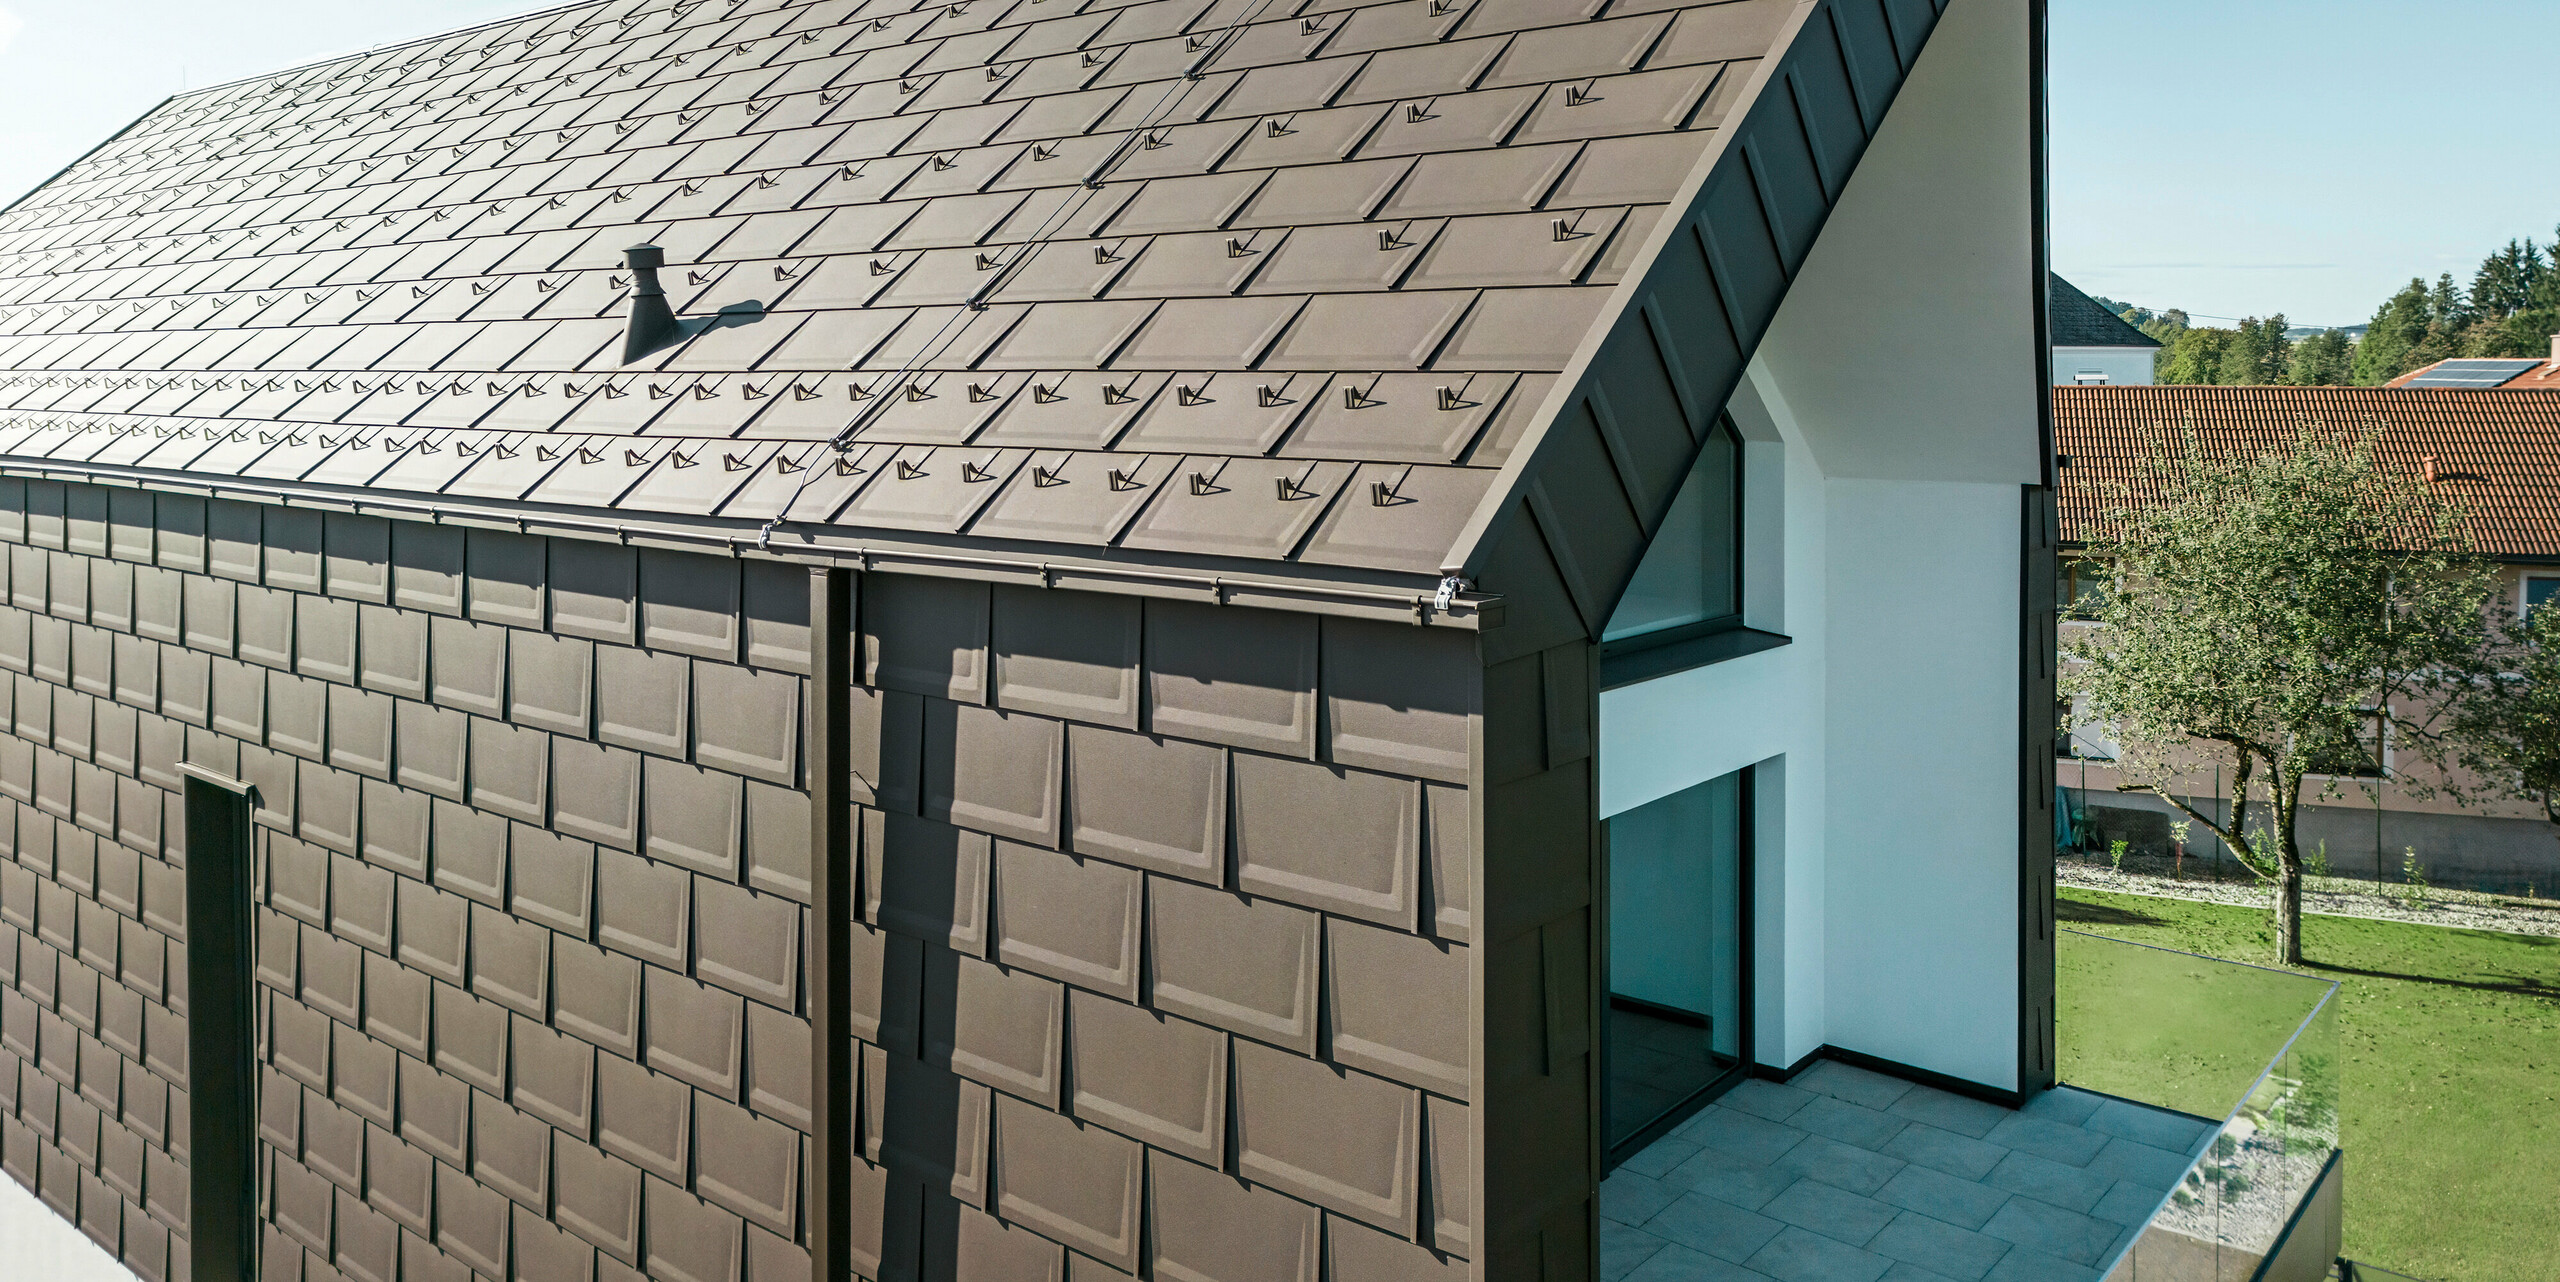 Perspektivische Ansicht des Daches und der Fassade eines modernen Einfamilienhauses in Neukirchen, Österreich. Die PREFA Dachplatte R.16 in P.10 Braun bietet eine ästhetische und funktionale Bedachung, die sich perfekt in die architektonische Gestaltung des Hauses einfügt. Der scharfe Dachfirst und die präzise Anordnung der Dachplatten demonstrieren die Qualität von PREFA. Die kleinformatigen Aluminiumprodukte harmonieren exzellent mit dem weiß verputzten Fassadenteil und der umliegenden grünen Landschaft.